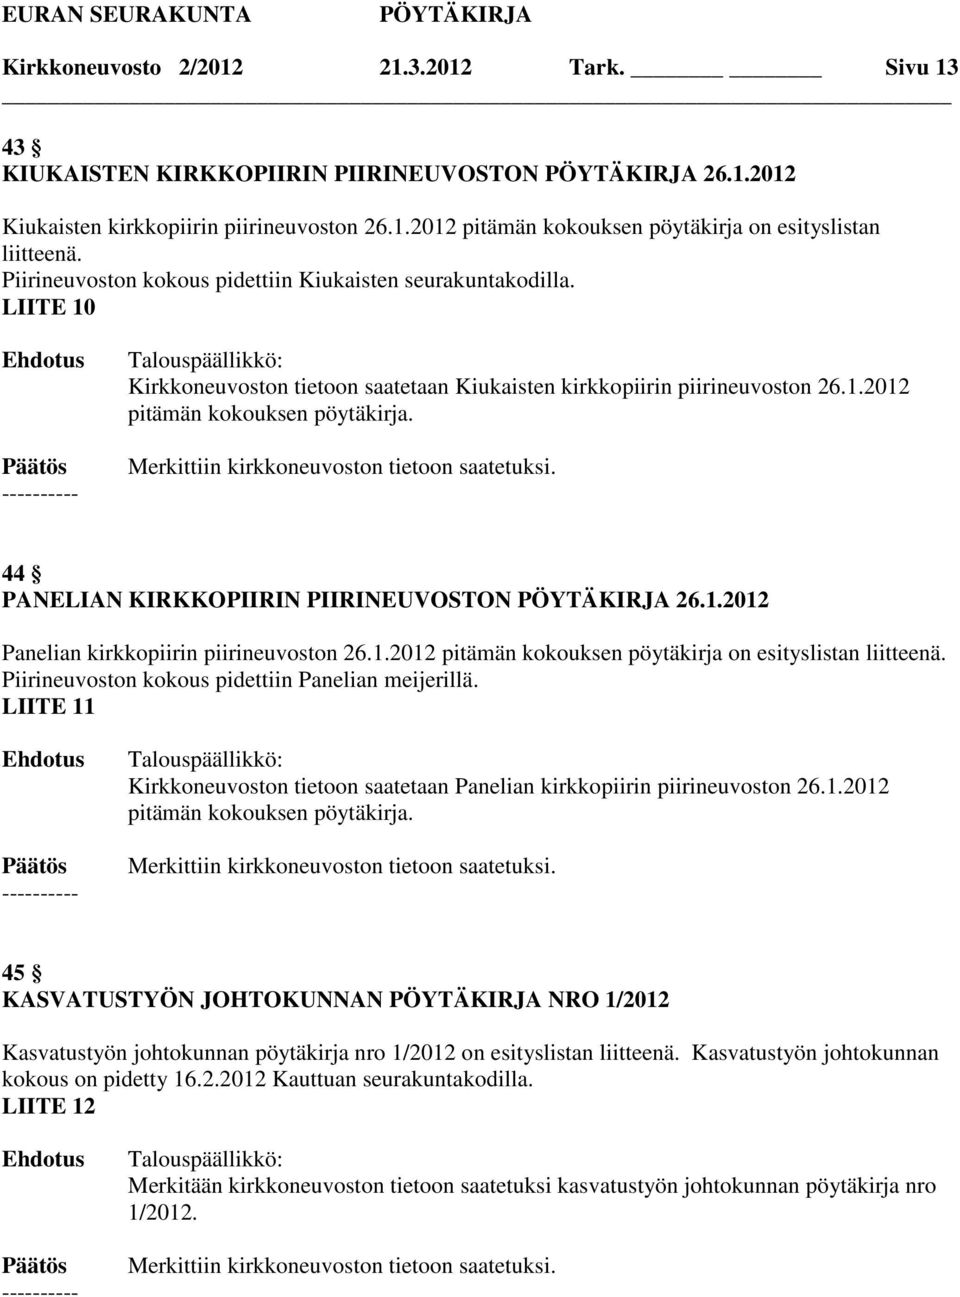 44 PANELIAN KIRKKOPIIRIN PIIRINEUVOSTON 26.1.2012 Panelian kirkkopiirin piirineuvoston 26.1.2012 pitämän kokouksen pöytäkirja on esityslistan liitteenä.